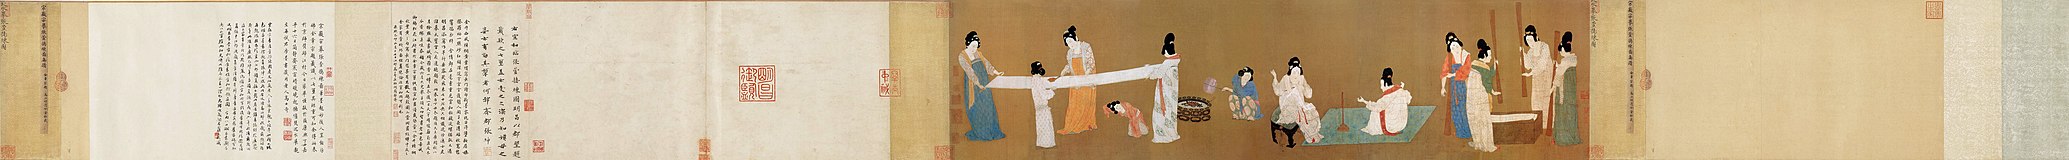 Hofdames verwerken pasgeweven zijde (vroeg 12e eeuw) door Song Huizong, naar het origineel van Zhang Xuan[4]